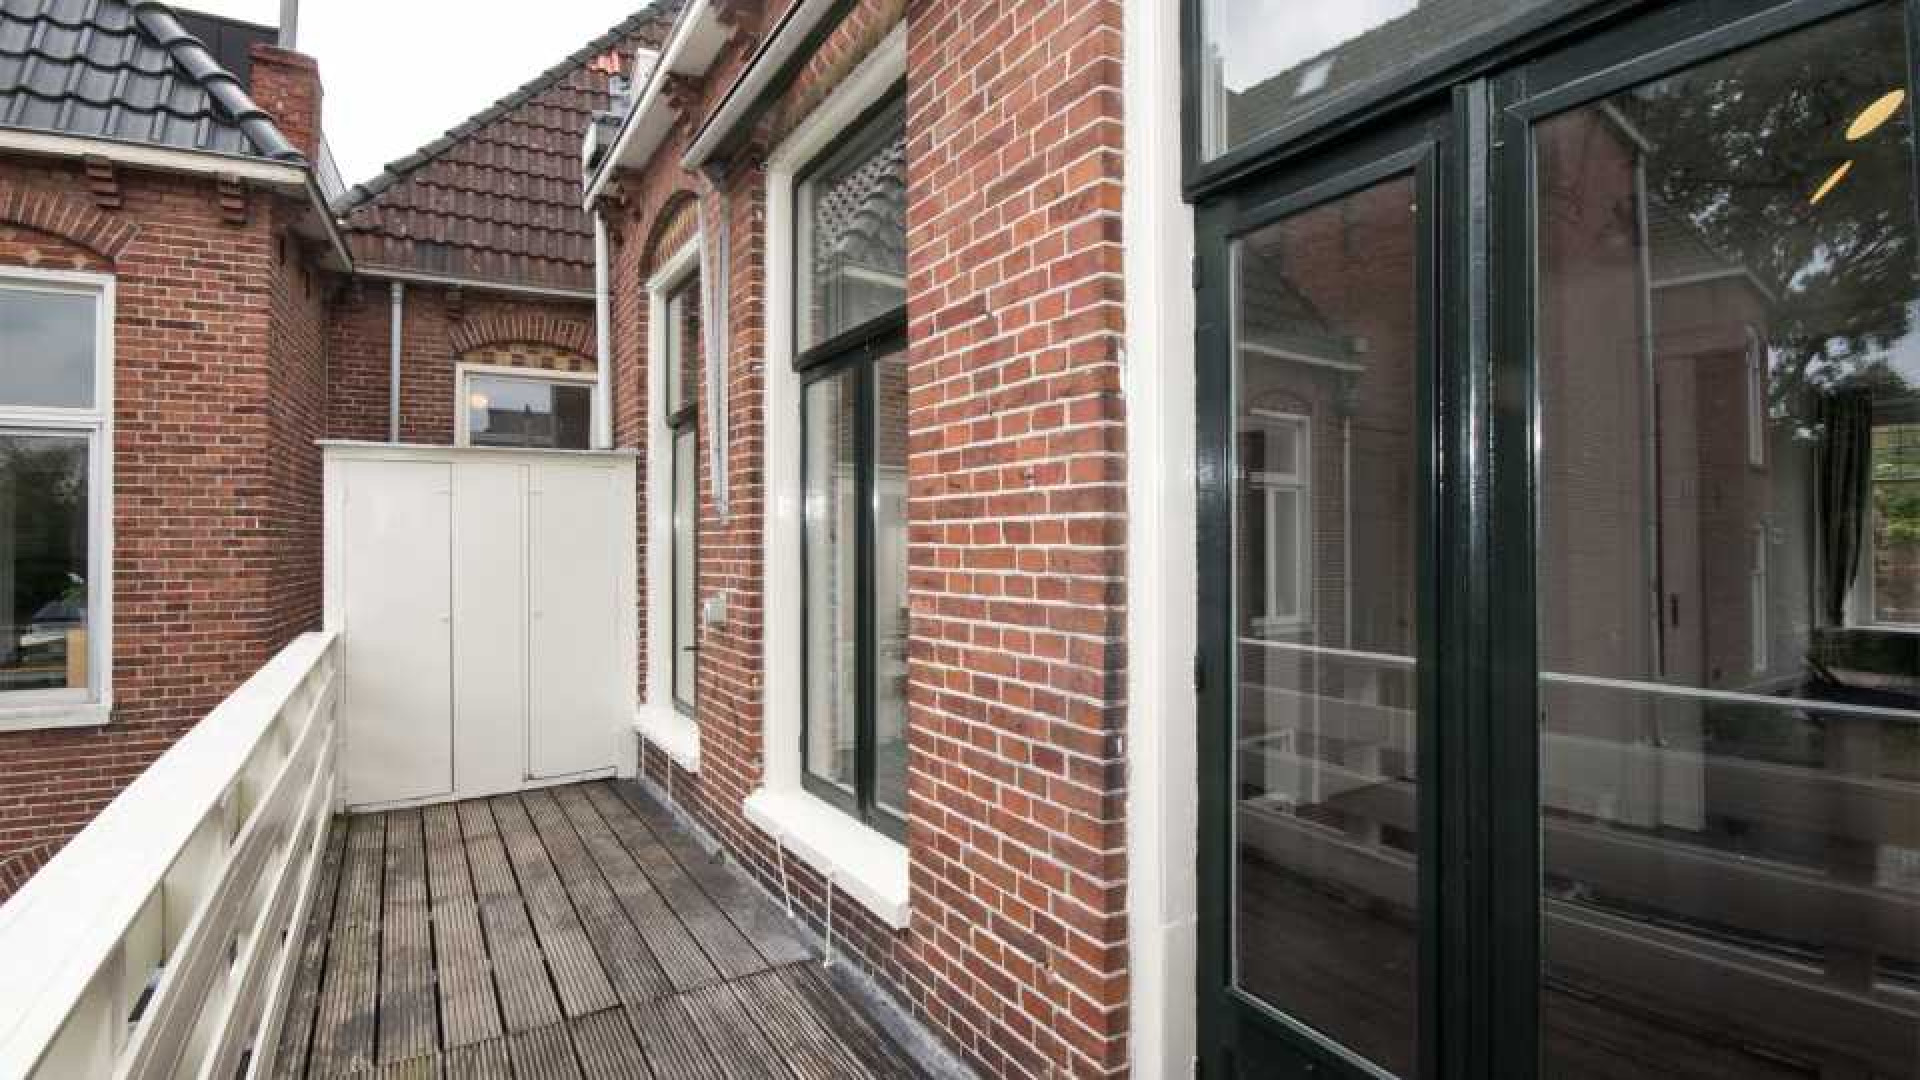 Victoria Koblenko en haar vriend Levchenko verkopen hun dubbel bovenhuis in Groningen. Zie foto's 9